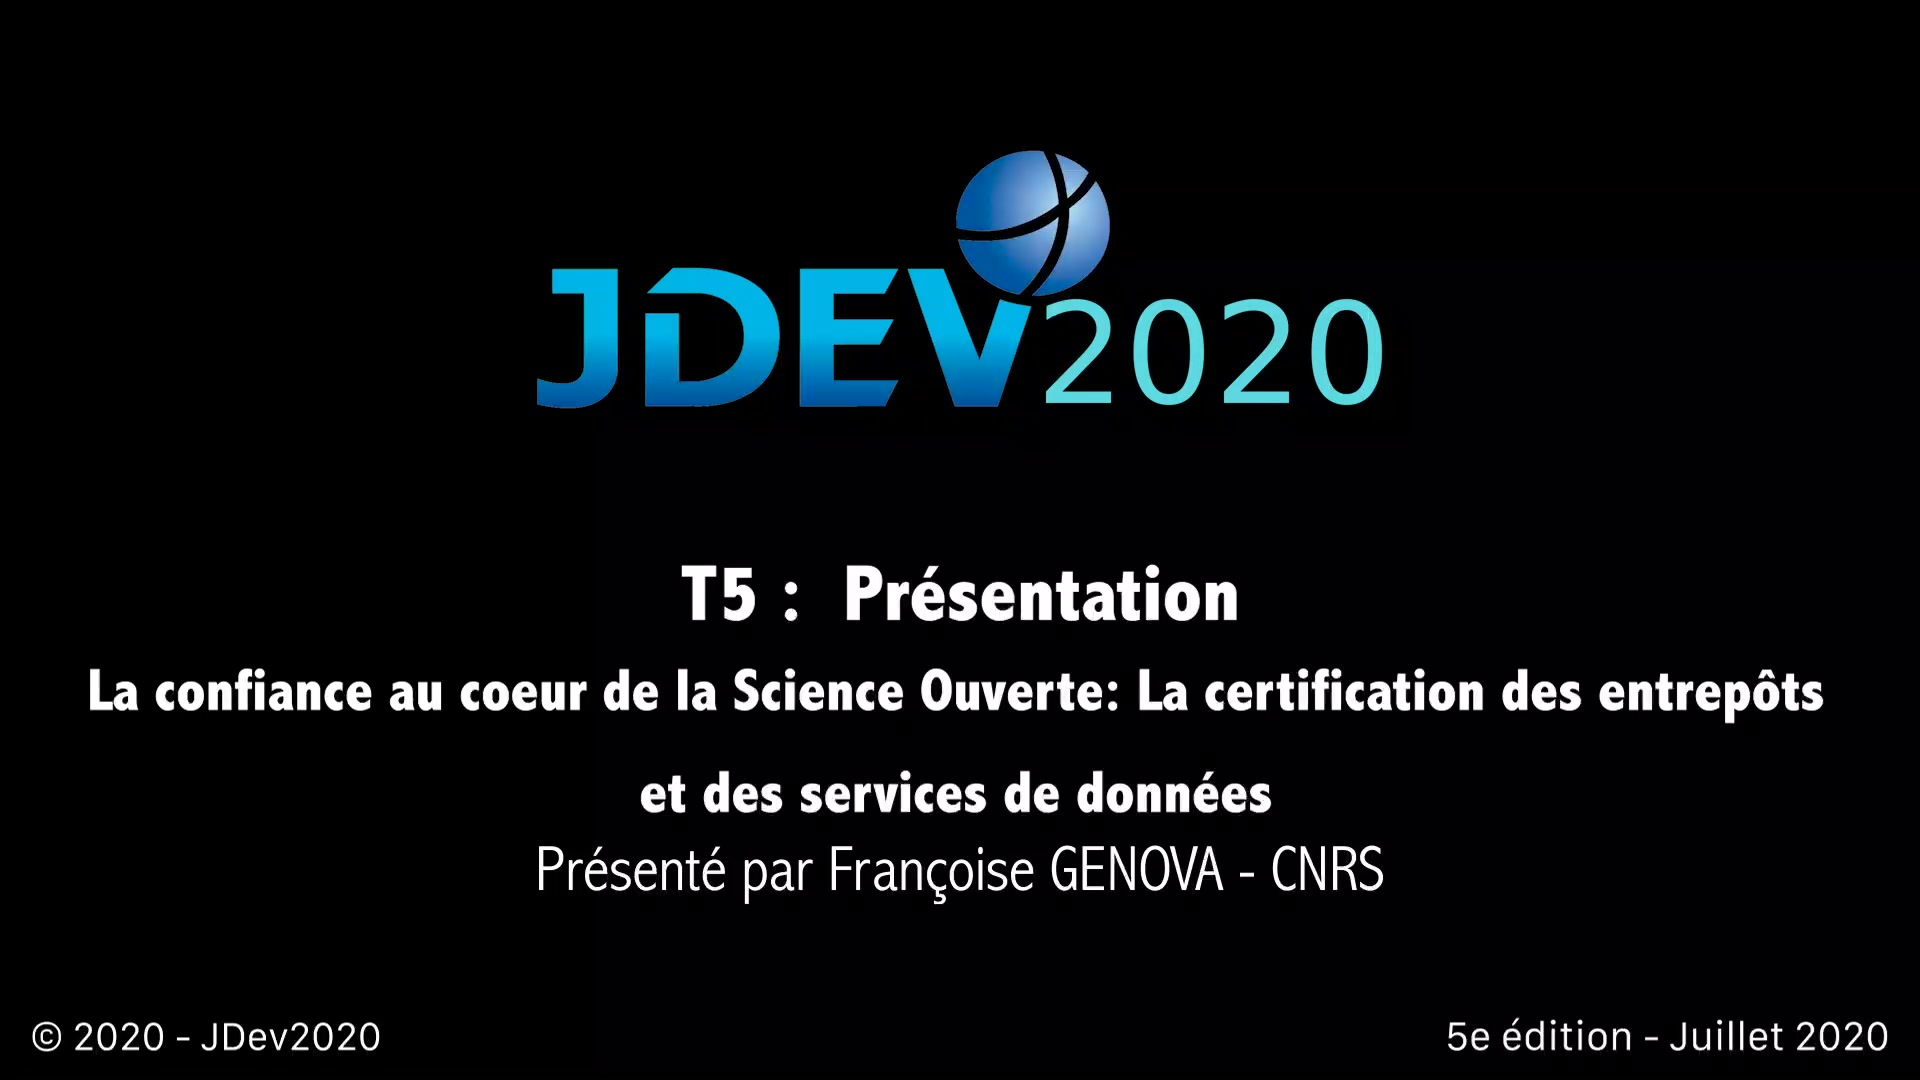 JDev2020 : T5 : La confiance au cœur de la Science Ouverte: La certification des entrepôts et des services de données